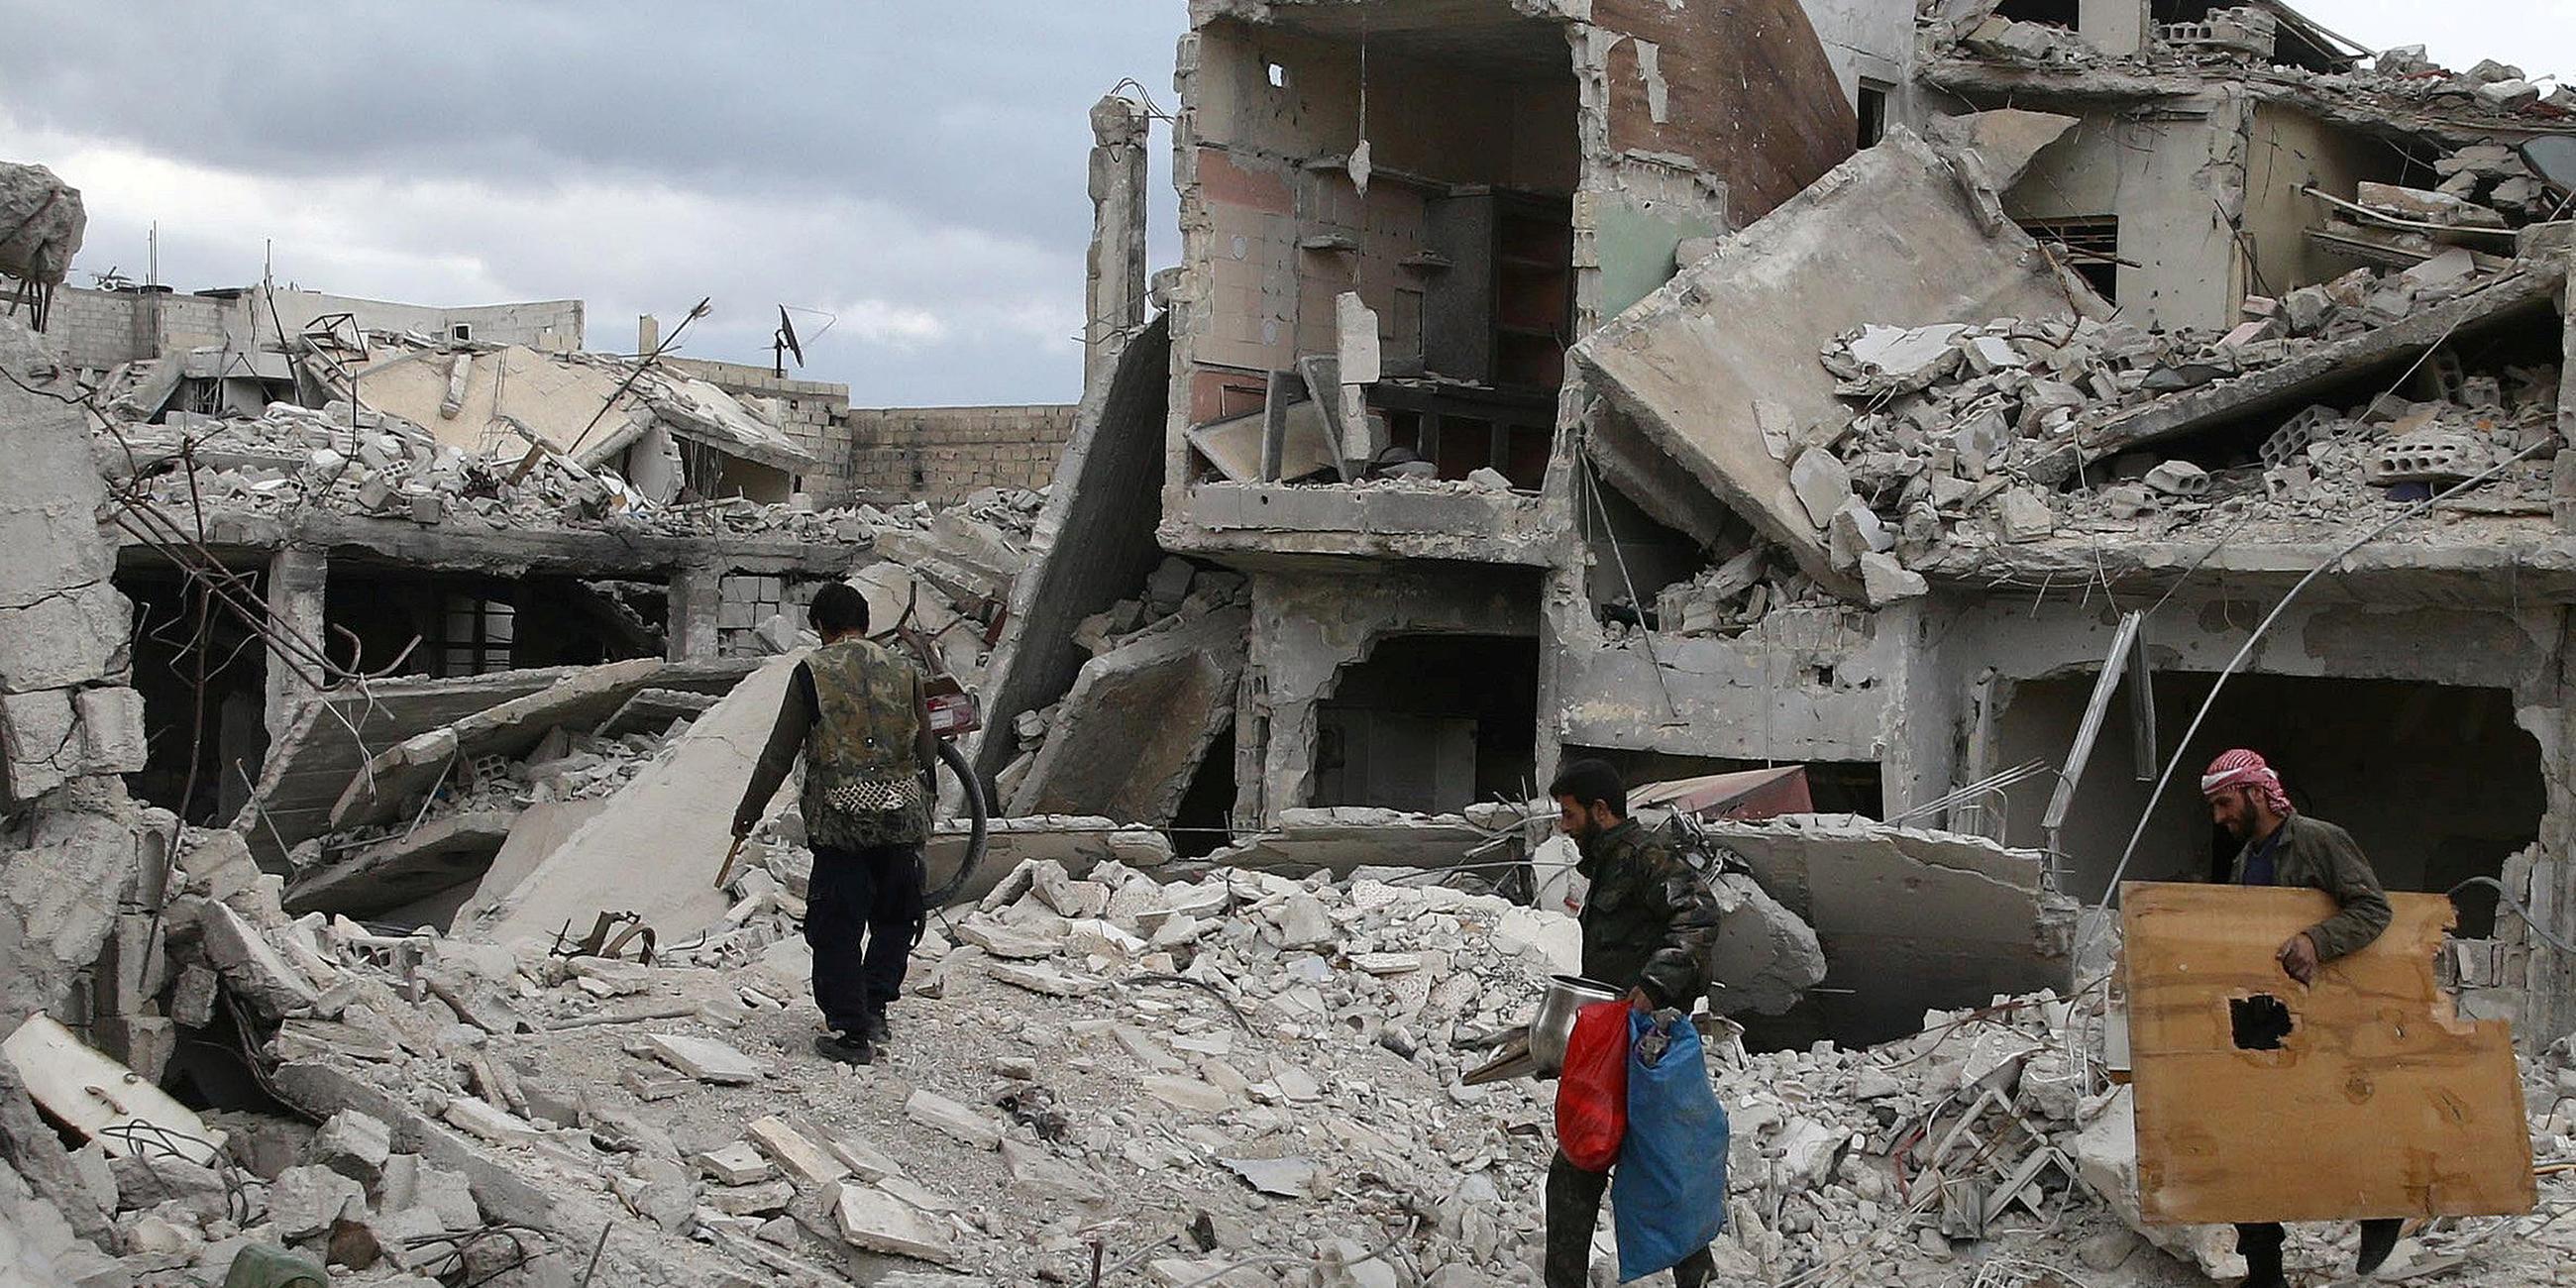 Archiv: Zerstörung in Syrien, aufgenommen am 30.03.2018 in Damaskus